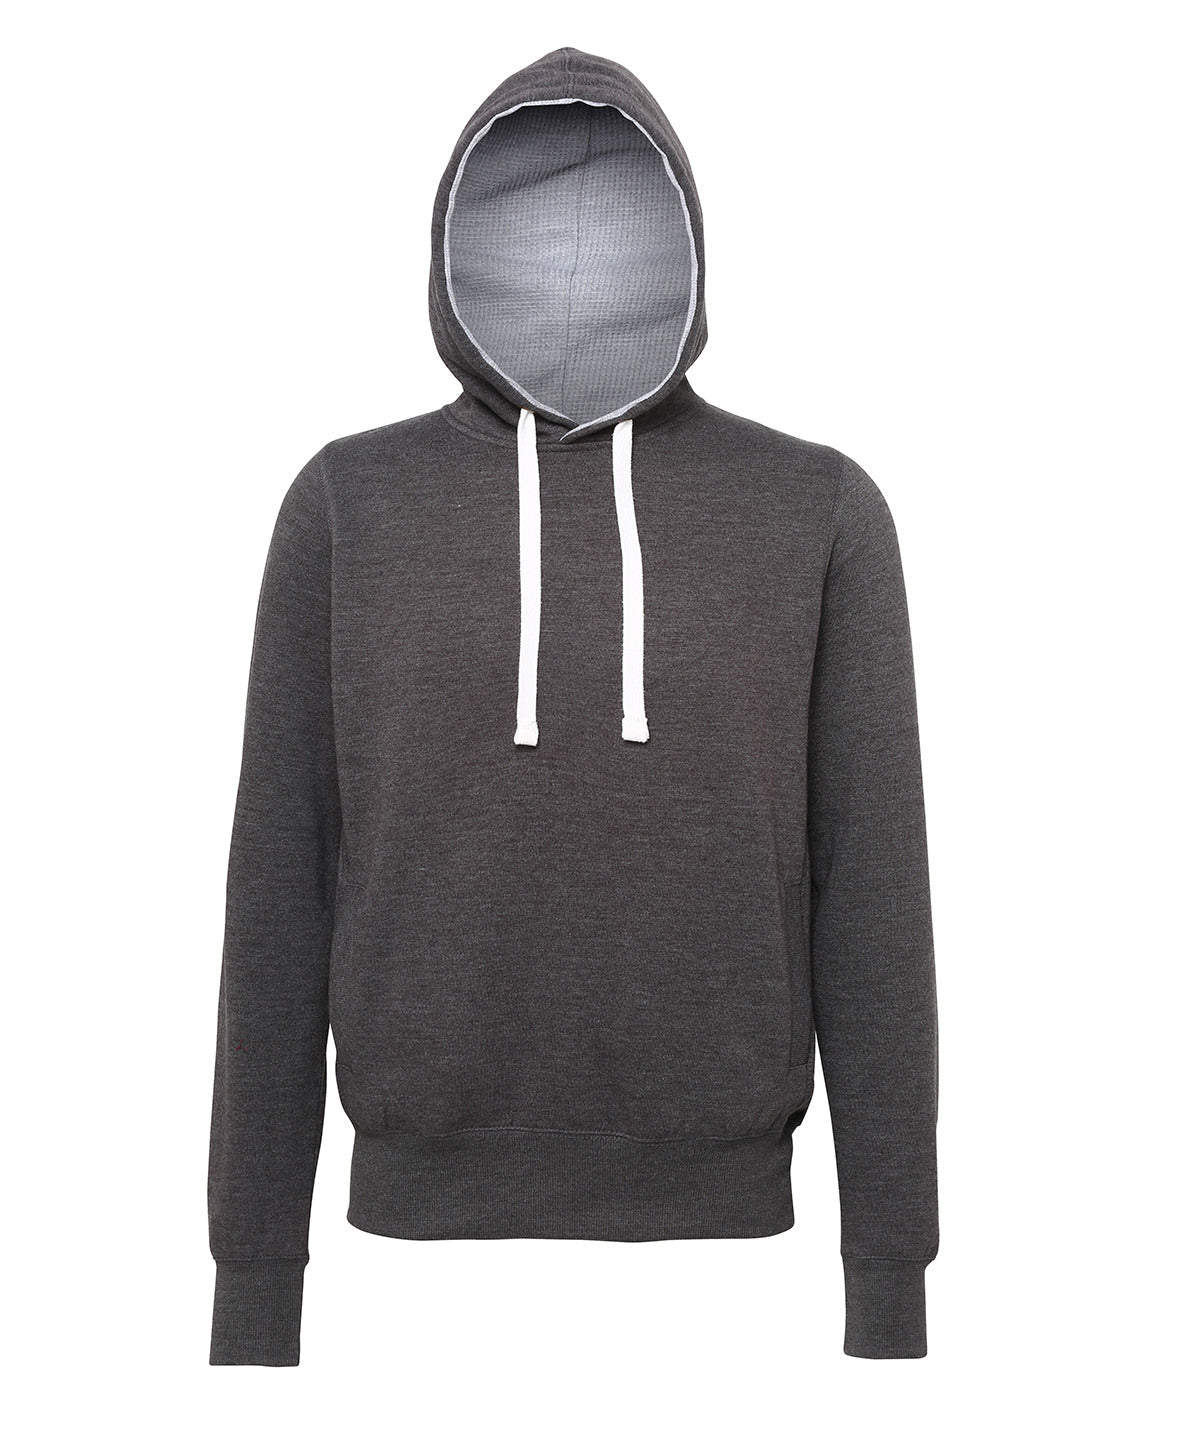 Personalised Hoodies - Dark Grey AWDis Just Hoods Chunky hoodie